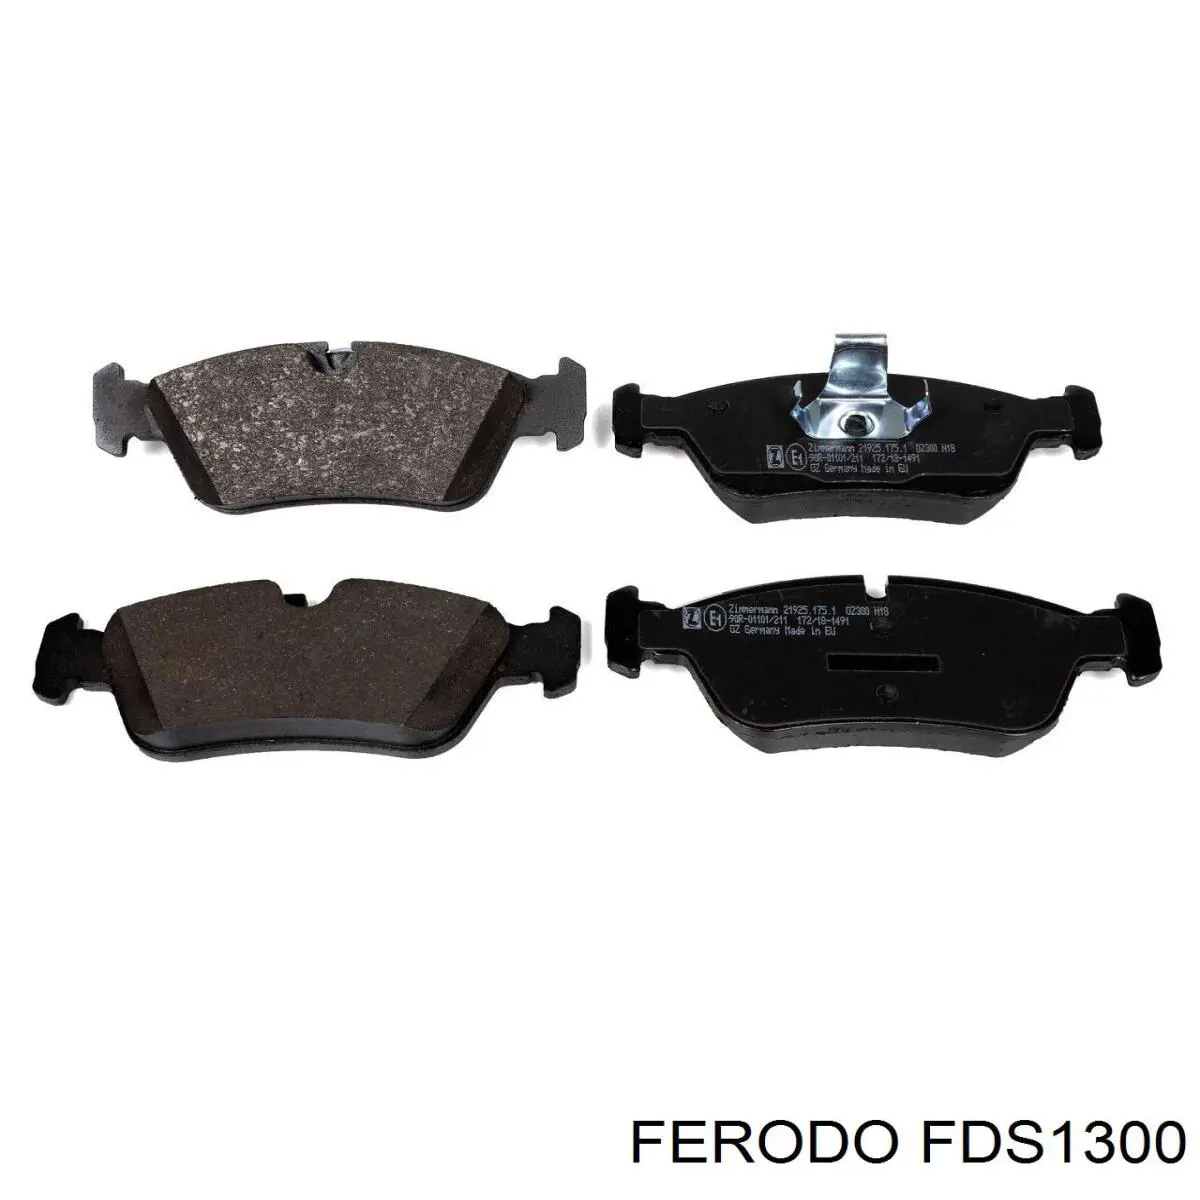 FDS1300 Ferodo pastillas de freno delanteras